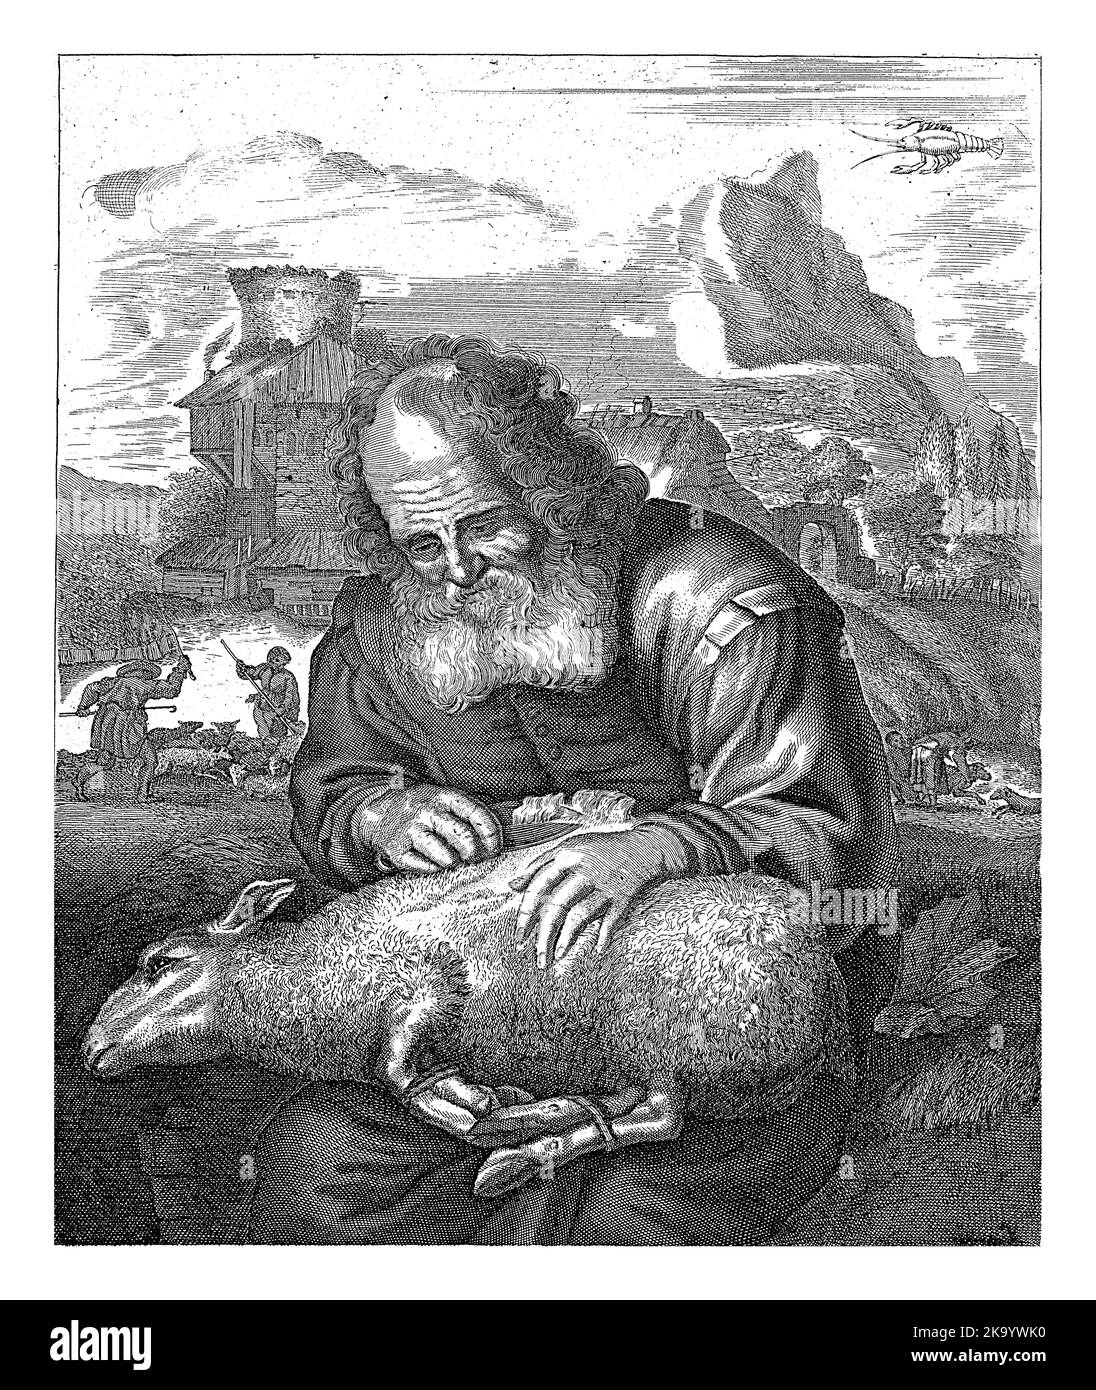 Ein alter Hirte scheren ein Schaf, das mit zusammengebundenen Beinen auf seinem Schoß liegt. Im Hintergrund eine Landschaft mit Gebäuden und Hirten mit ihren s Stockfoto